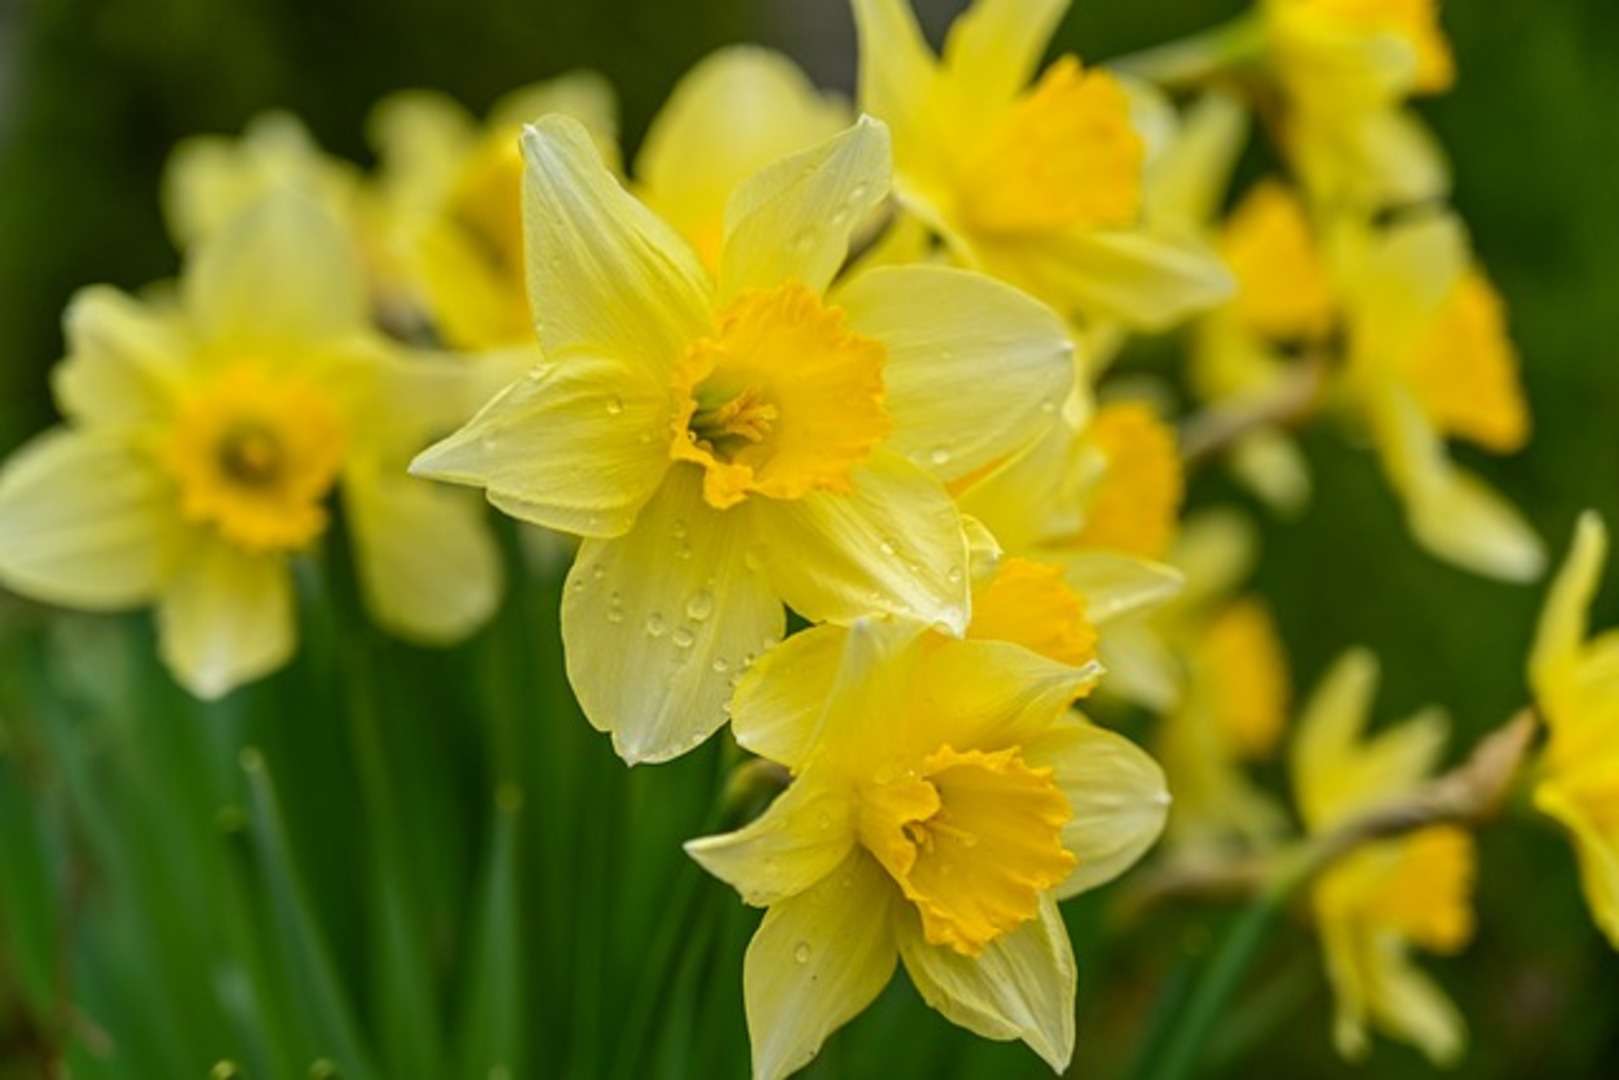 wild-daffodils-g41f39eb43_640.jpg